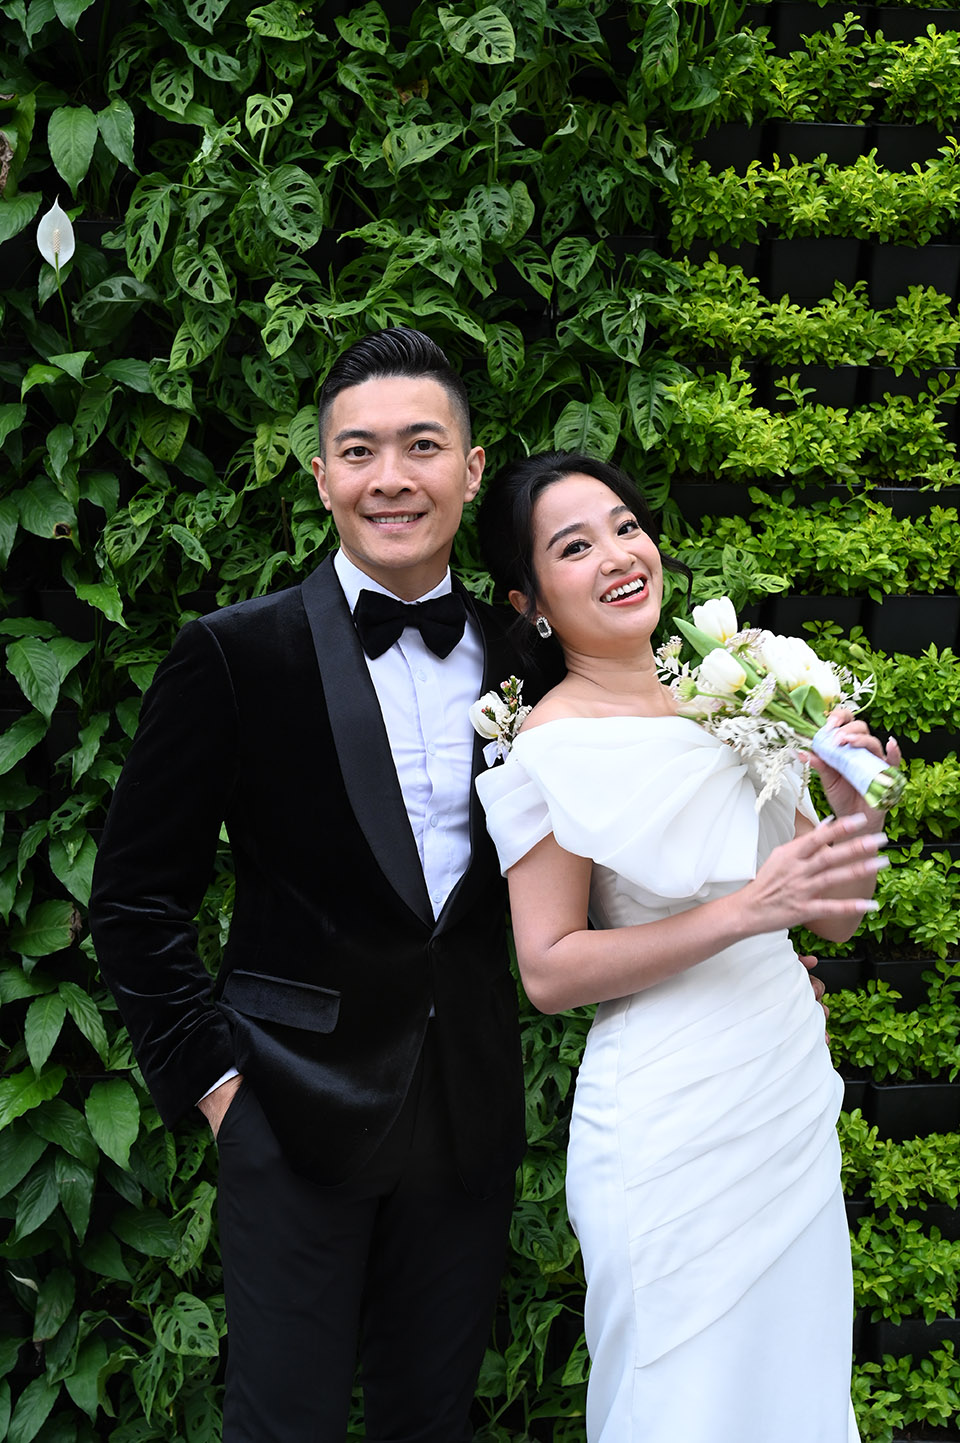 MC Quyền Linh, Sam dự tiệc kỷ niệm 7 năm cưới của Quốc Cơ - Hồng Phượng - 1